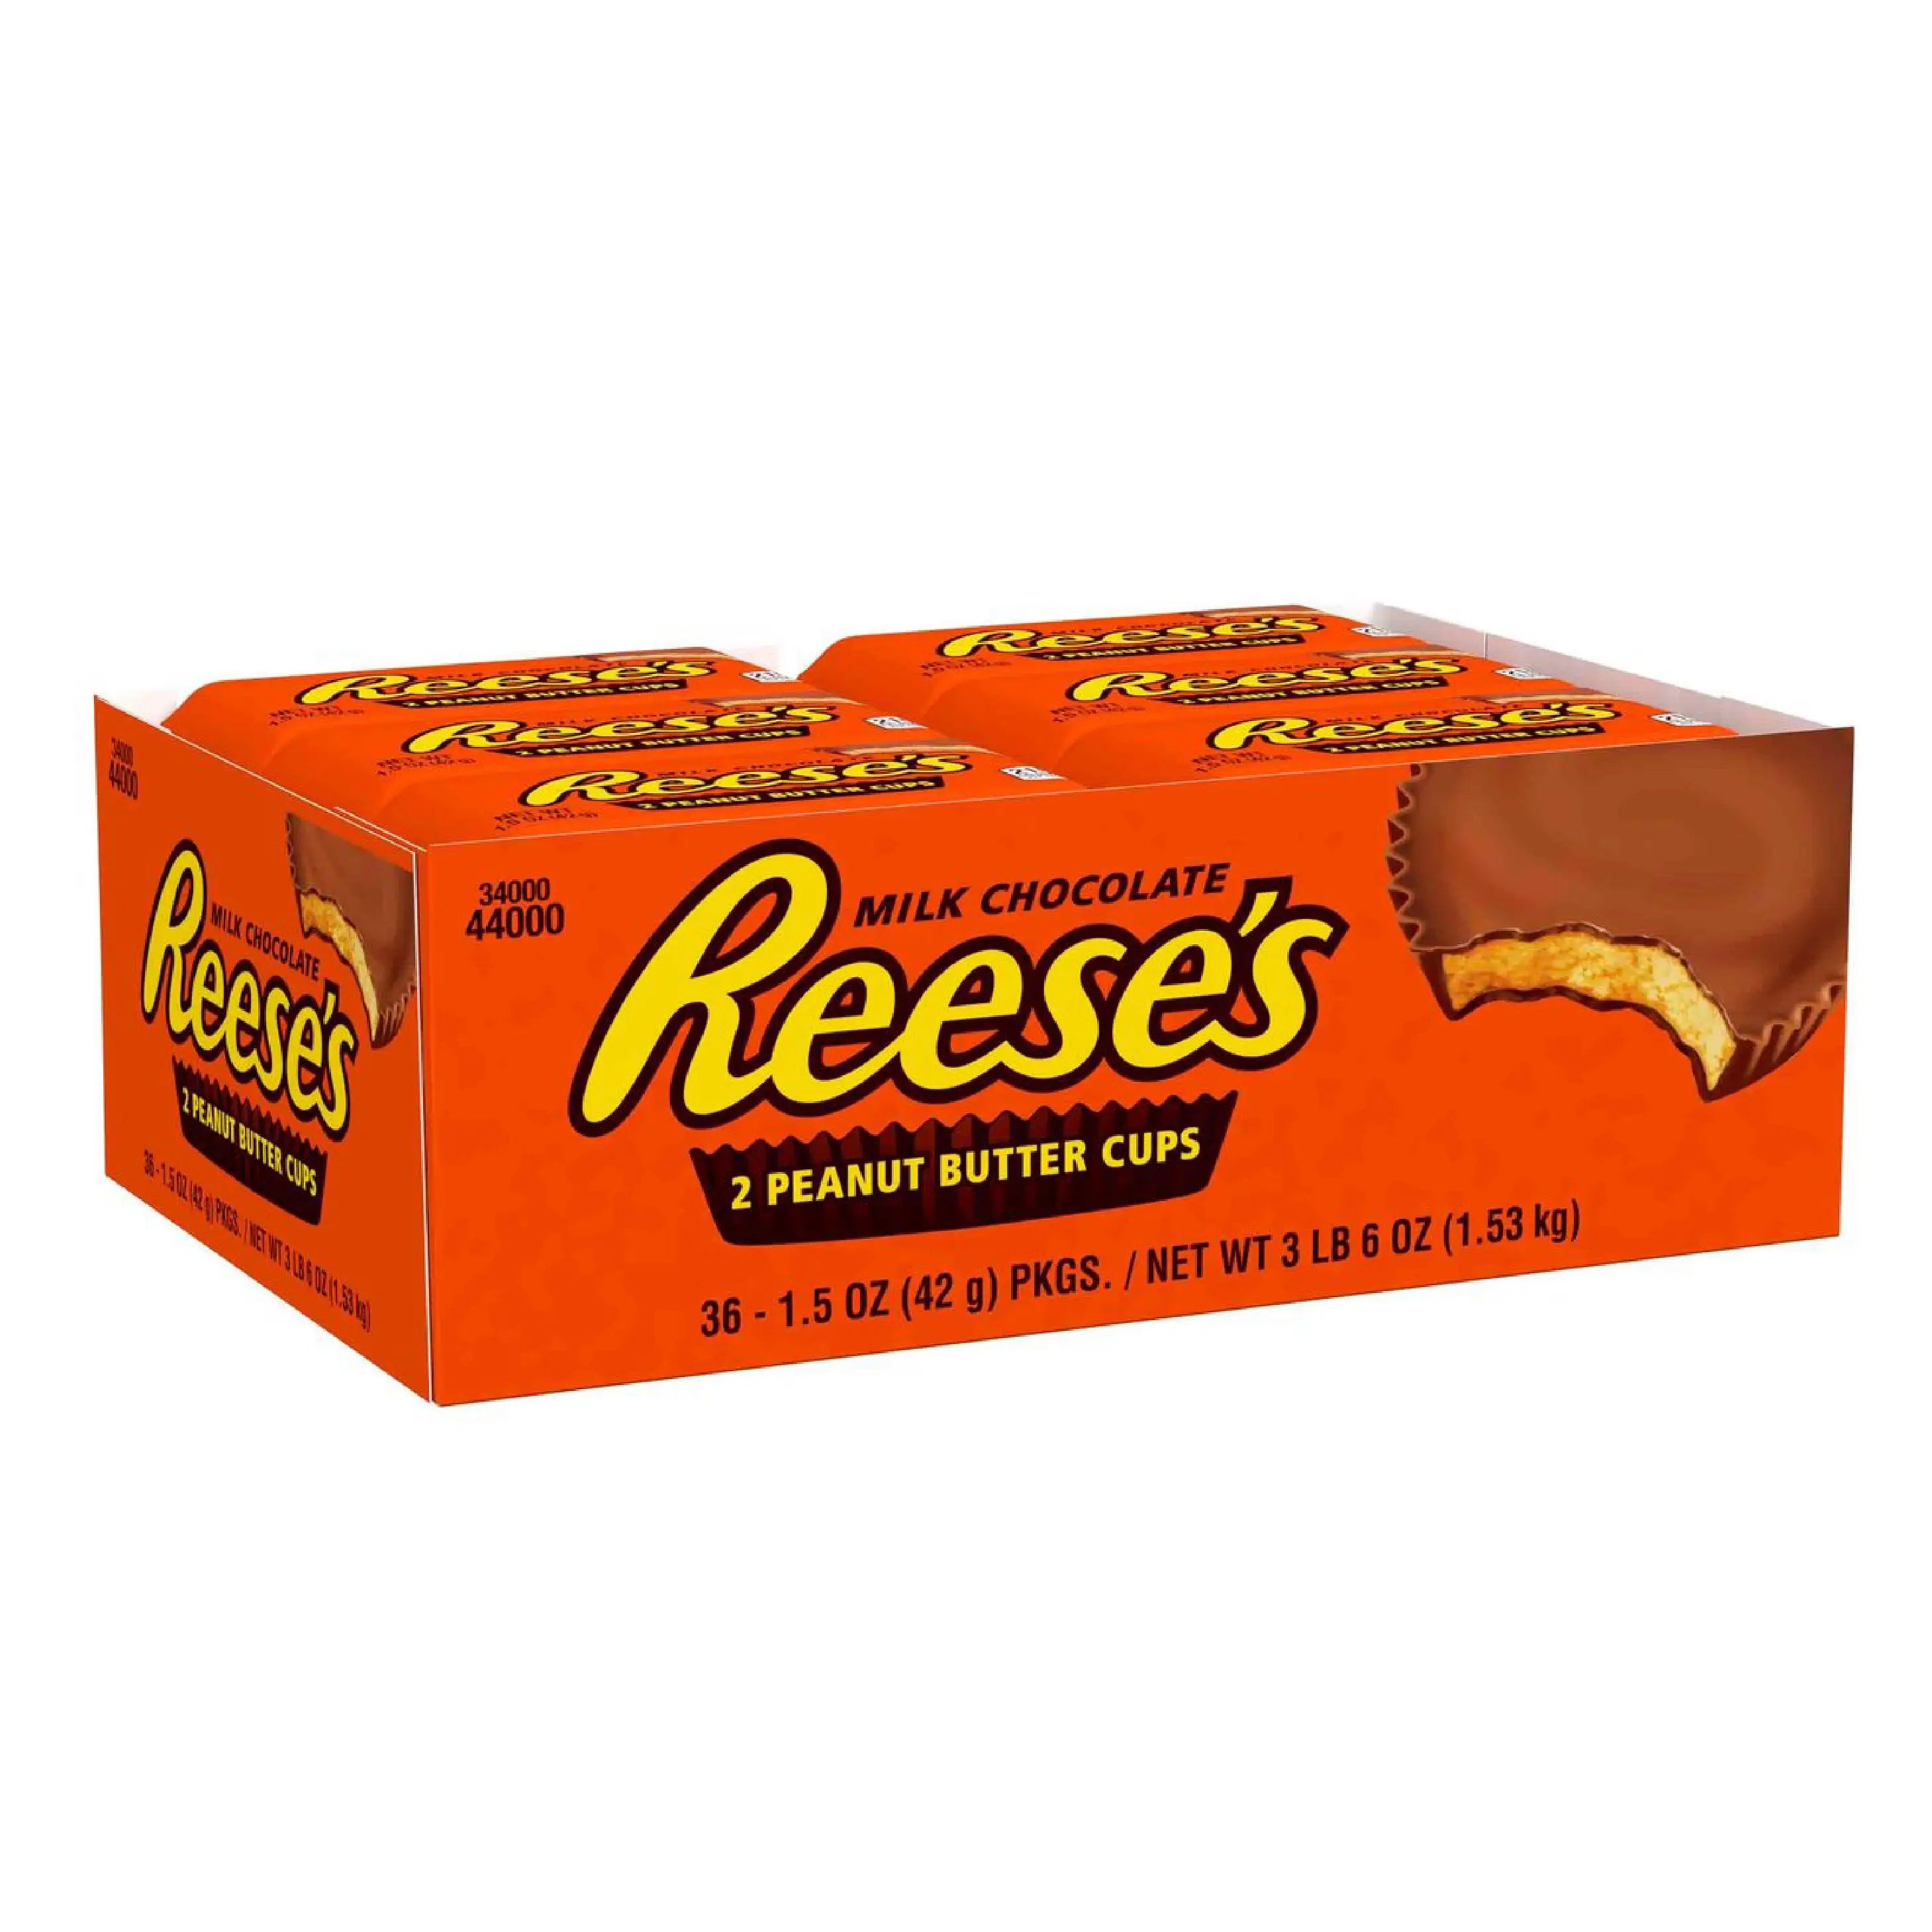 Un grand carton orange avec plusieurs emballages individuels. Il est écrit « Reese’s » au centre et au milieu, au-dessus à droite il y a un chocolat en cup qui est croqué et on y voit une pâte brune claire